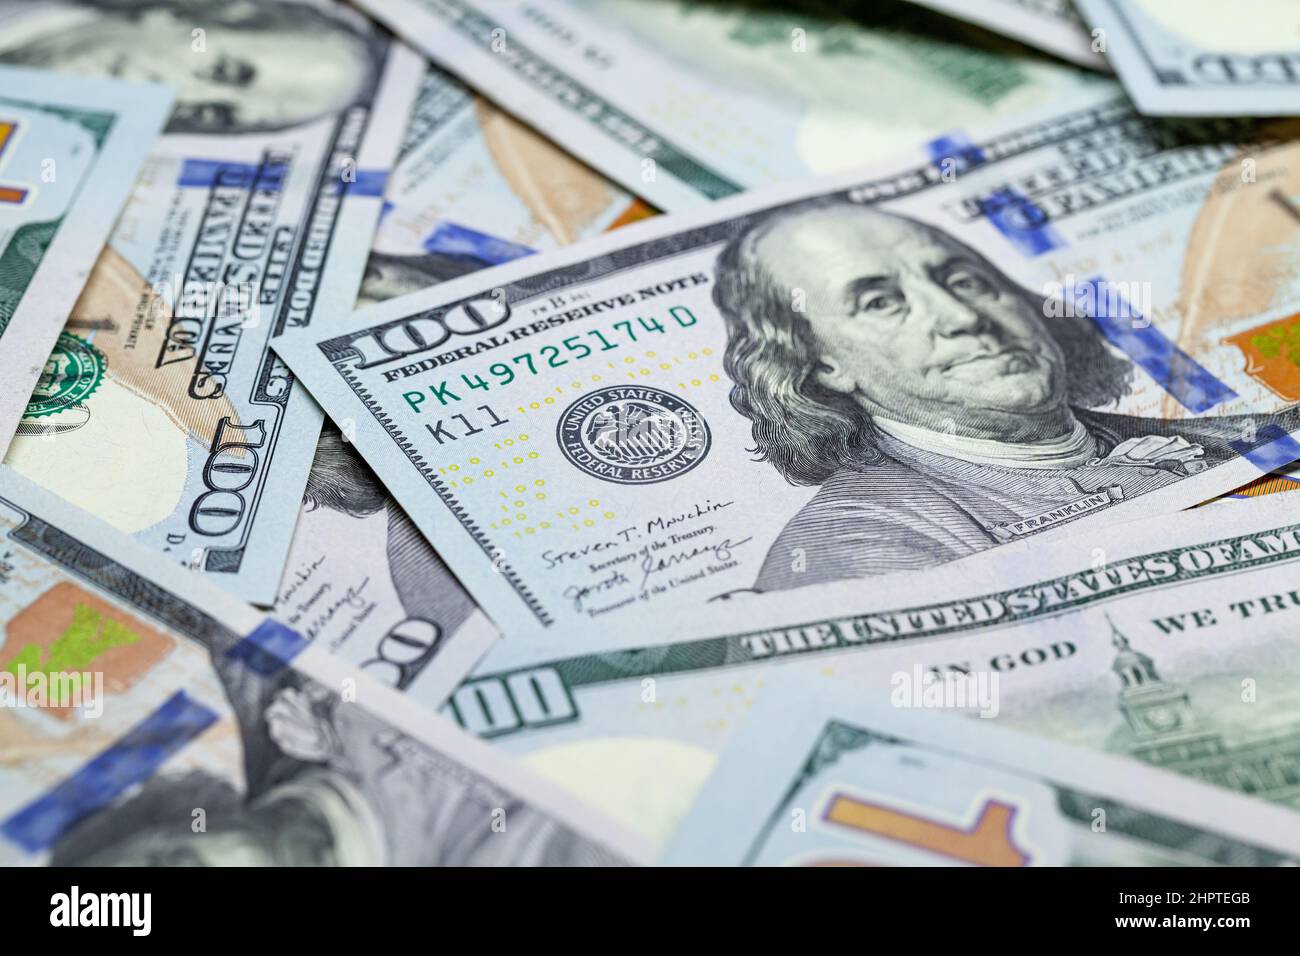 100 Dollar-Scheine aus der Nähe. USD, die offizielle Währung der Vereinigten Staaten, Finanzhintergrund Foto Stockfoto